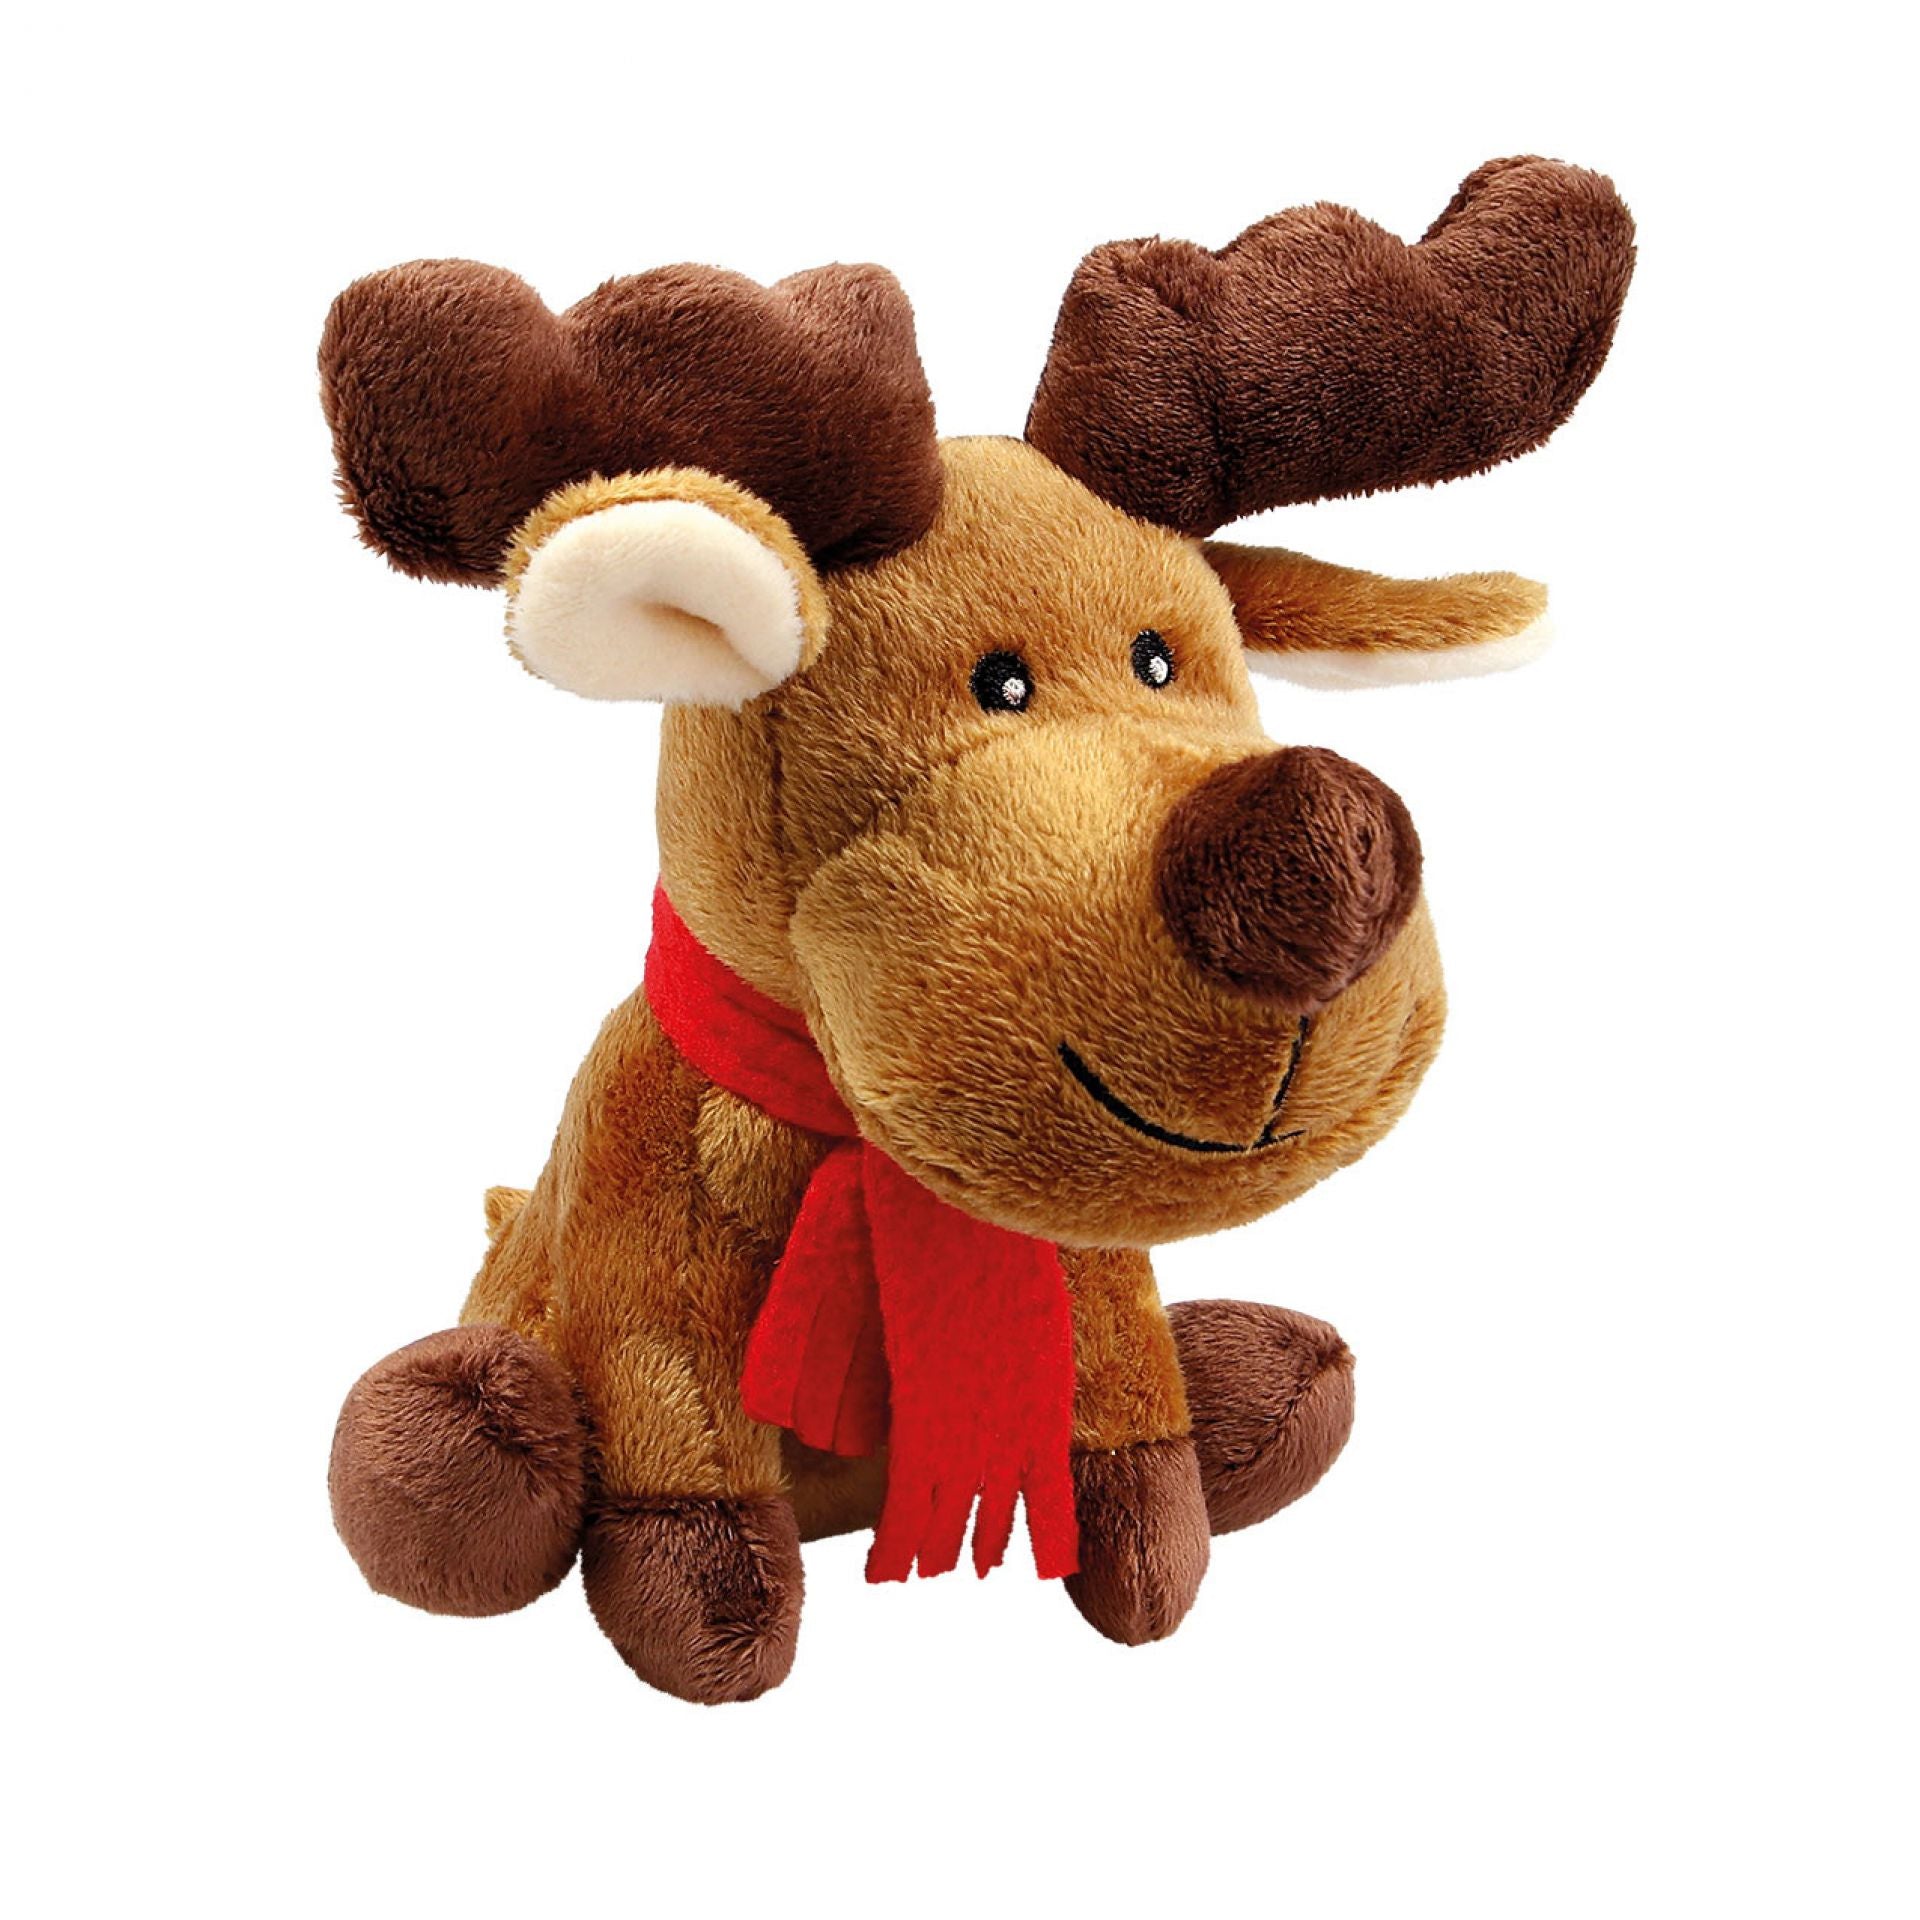 Wolters - Plüschelch "Rudolph" in 15cm